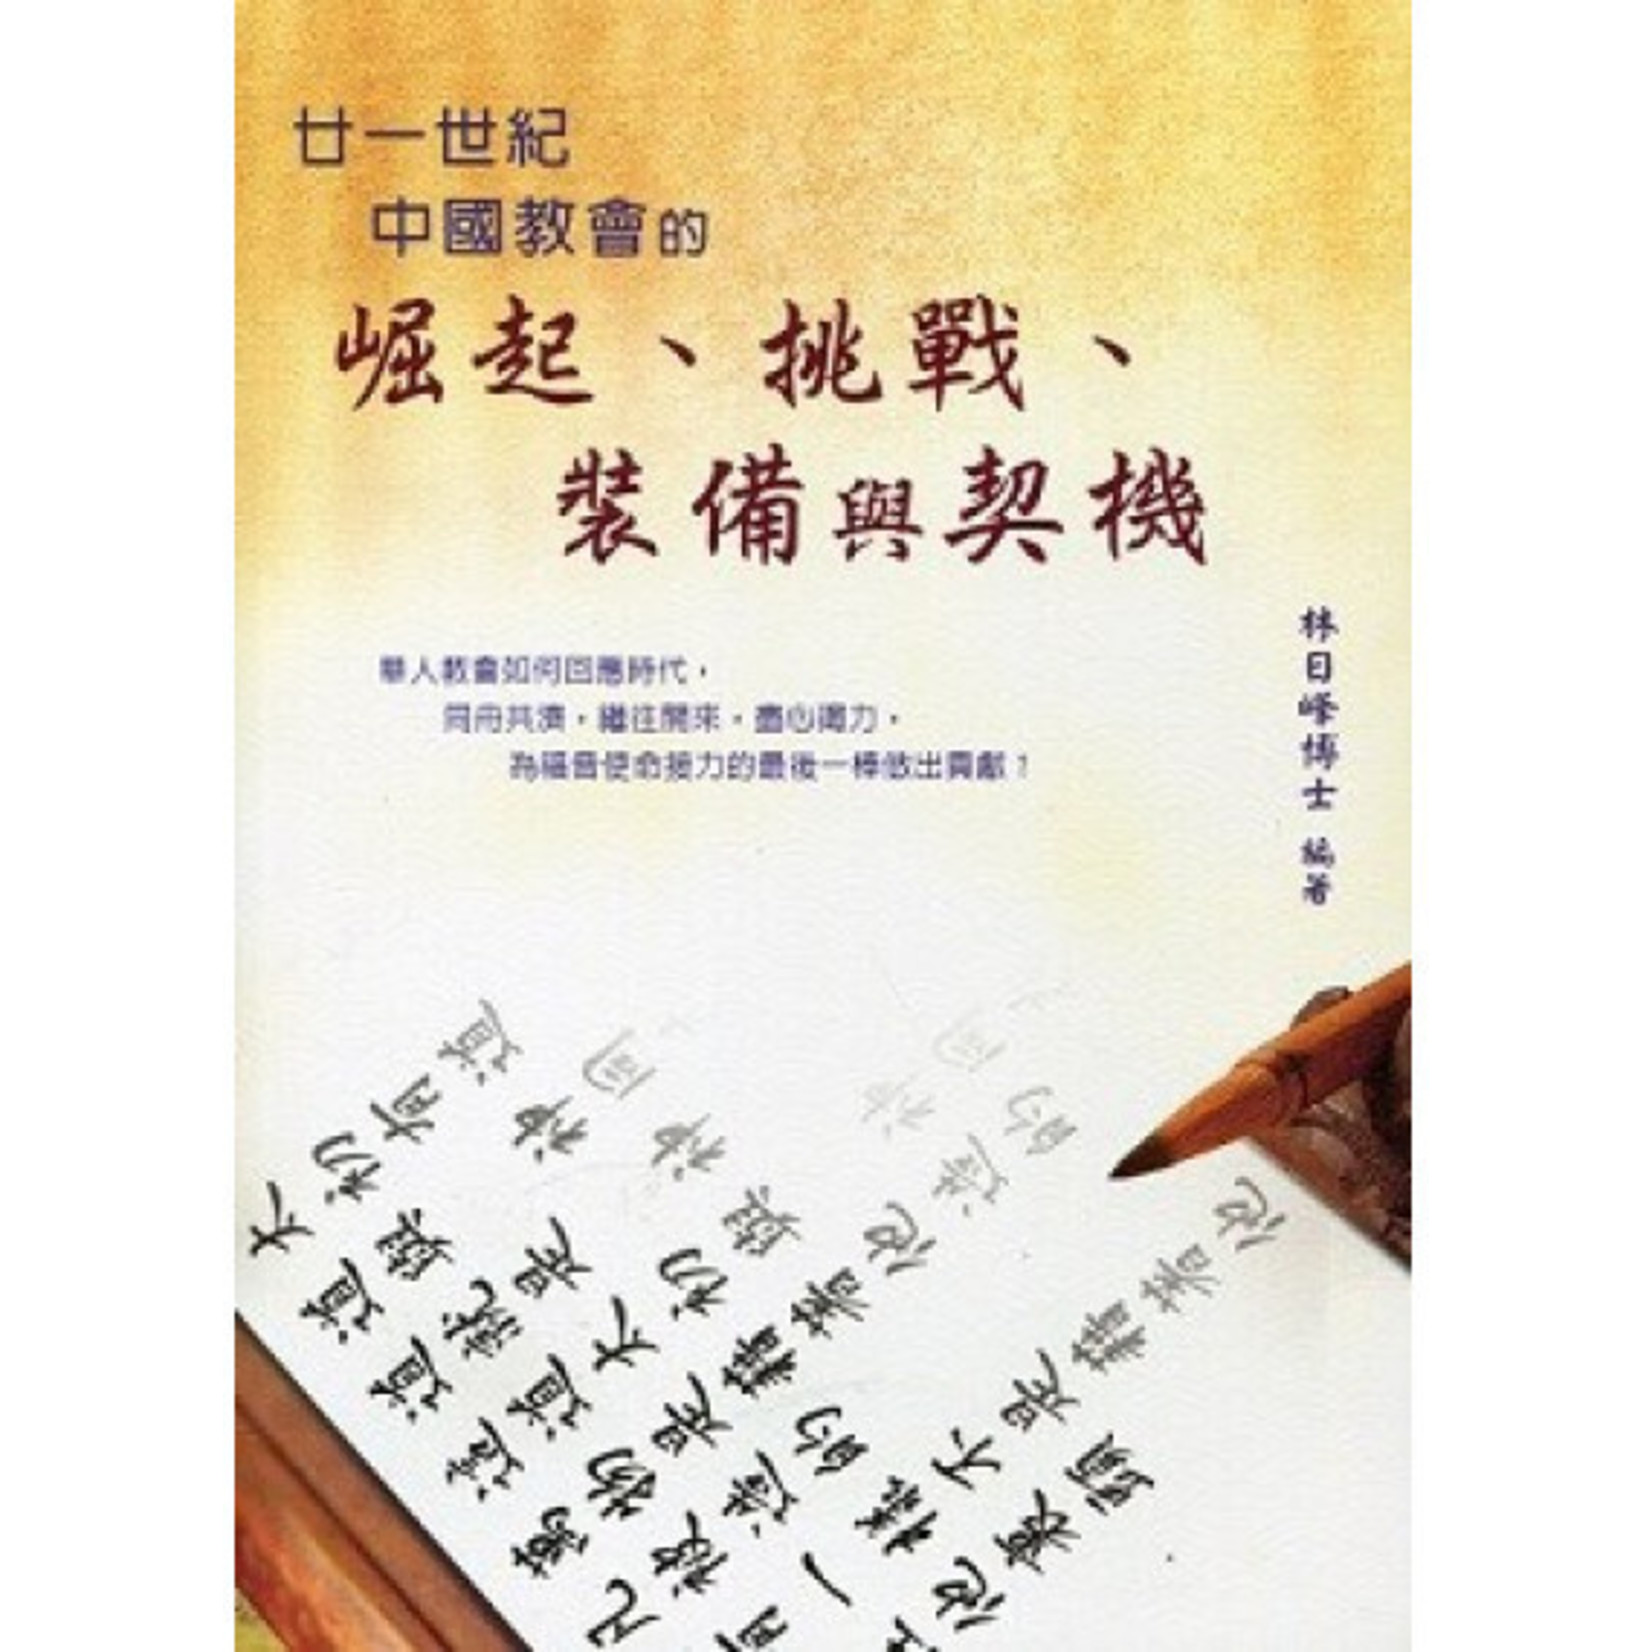 中國主日學協會 China Sunday School Association 廿一世紀中國教會的崛起、挑戰、裝備與契機